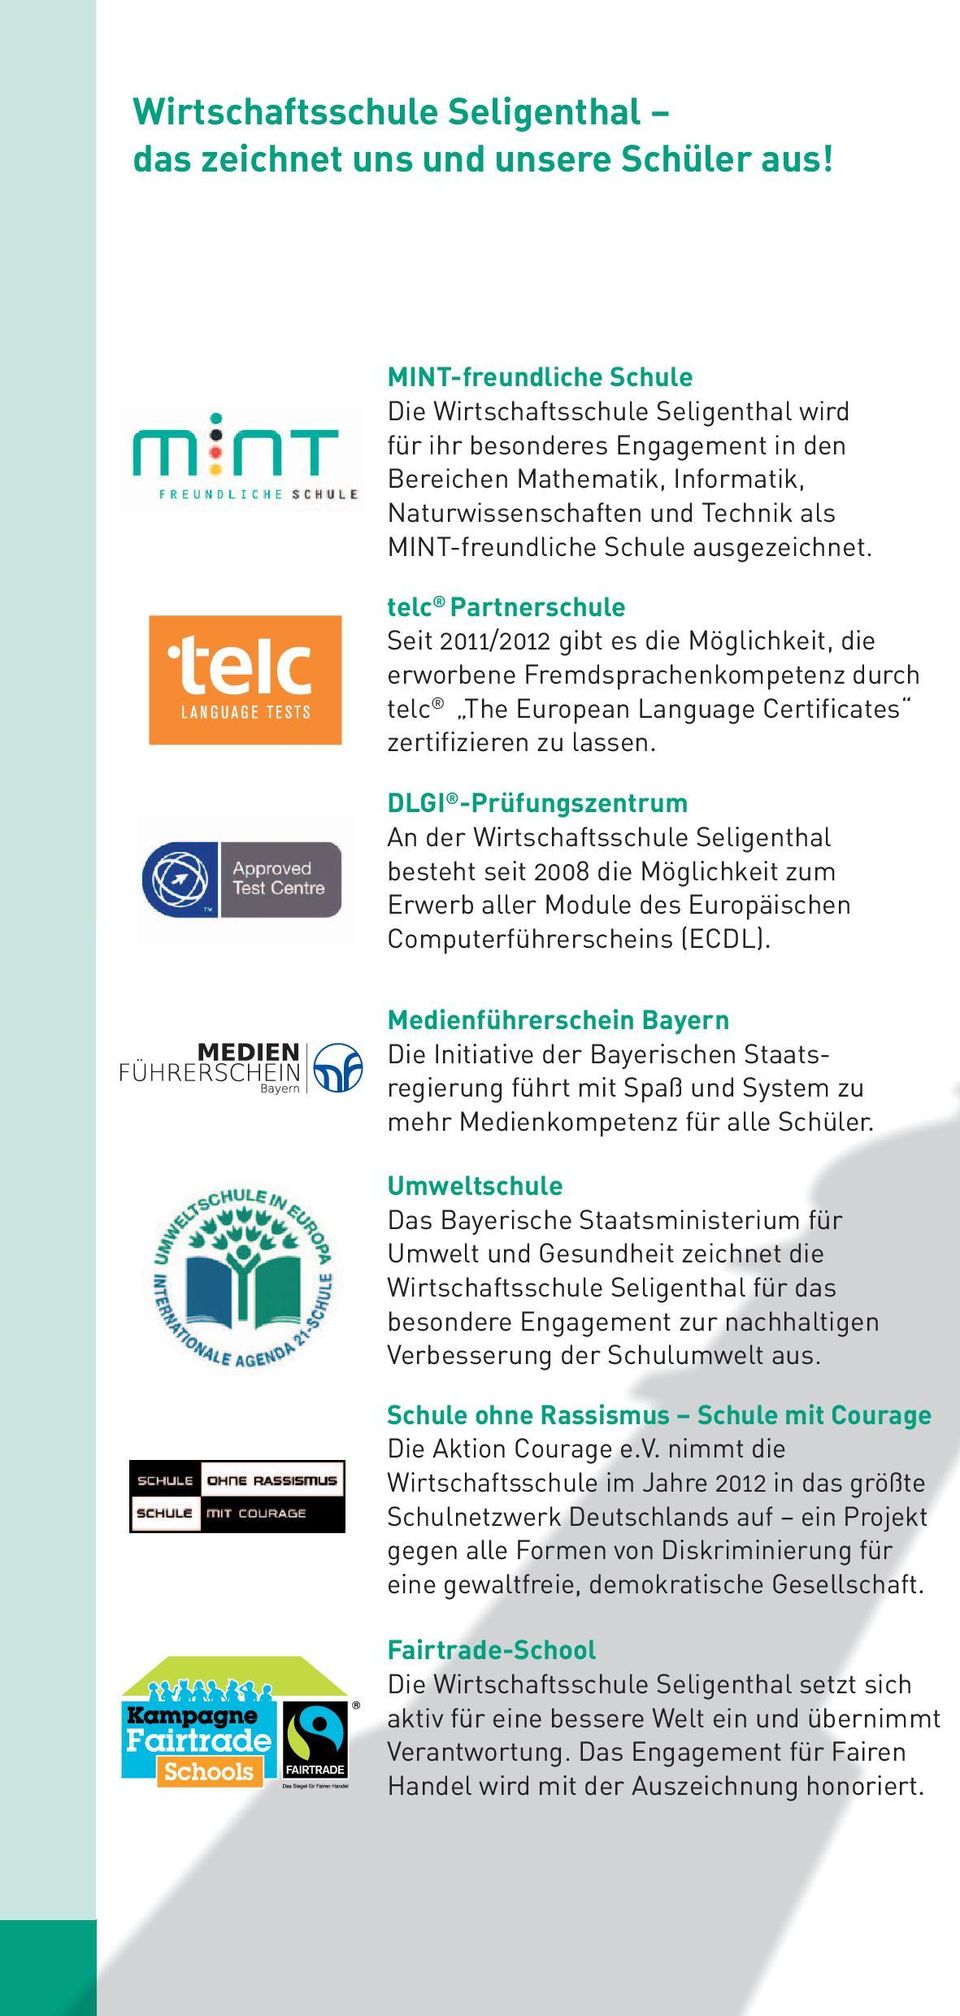 ausgezeichnet. telc Partnerschule Seit 2011/2012 gibt es die Möglichkeit, die erworbene Fremdsprachenkompetenz durch telc The European Language Certificates zertifizieren zu lassen.